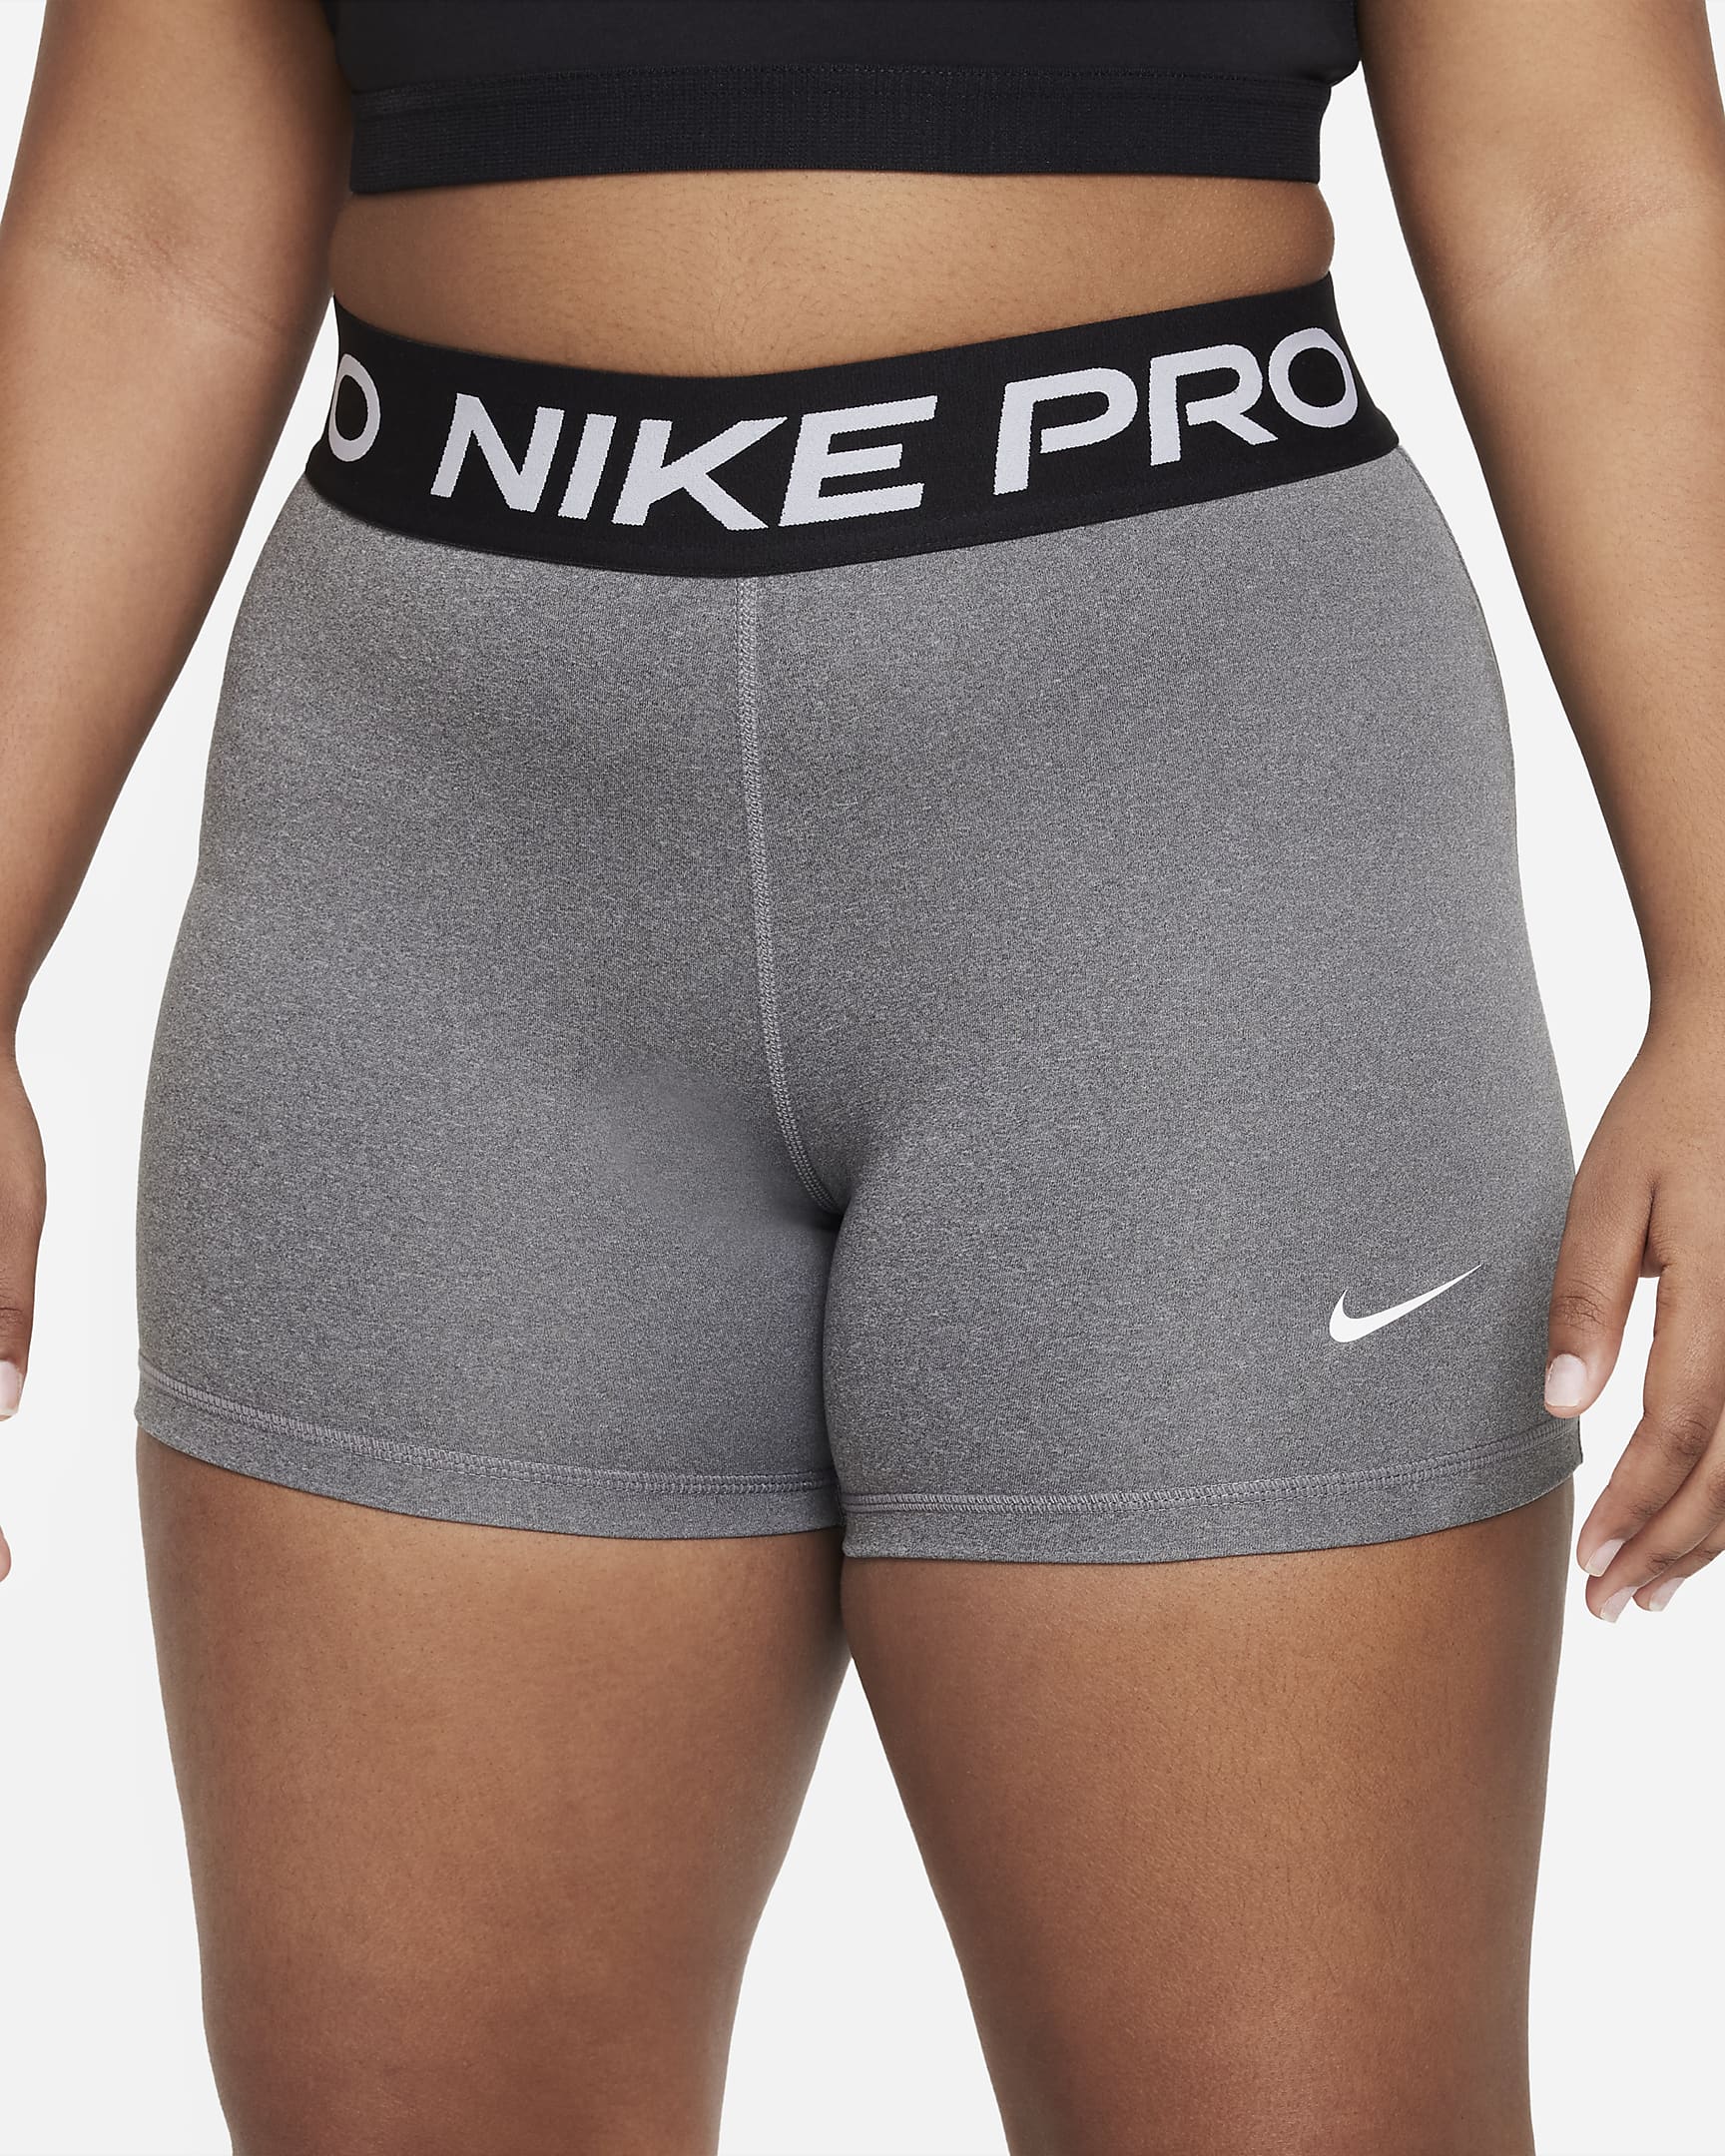 Shorts Nike Pro Dri-FIT (Taglia grande) - Ragazza - Carbon Heather/Bianco